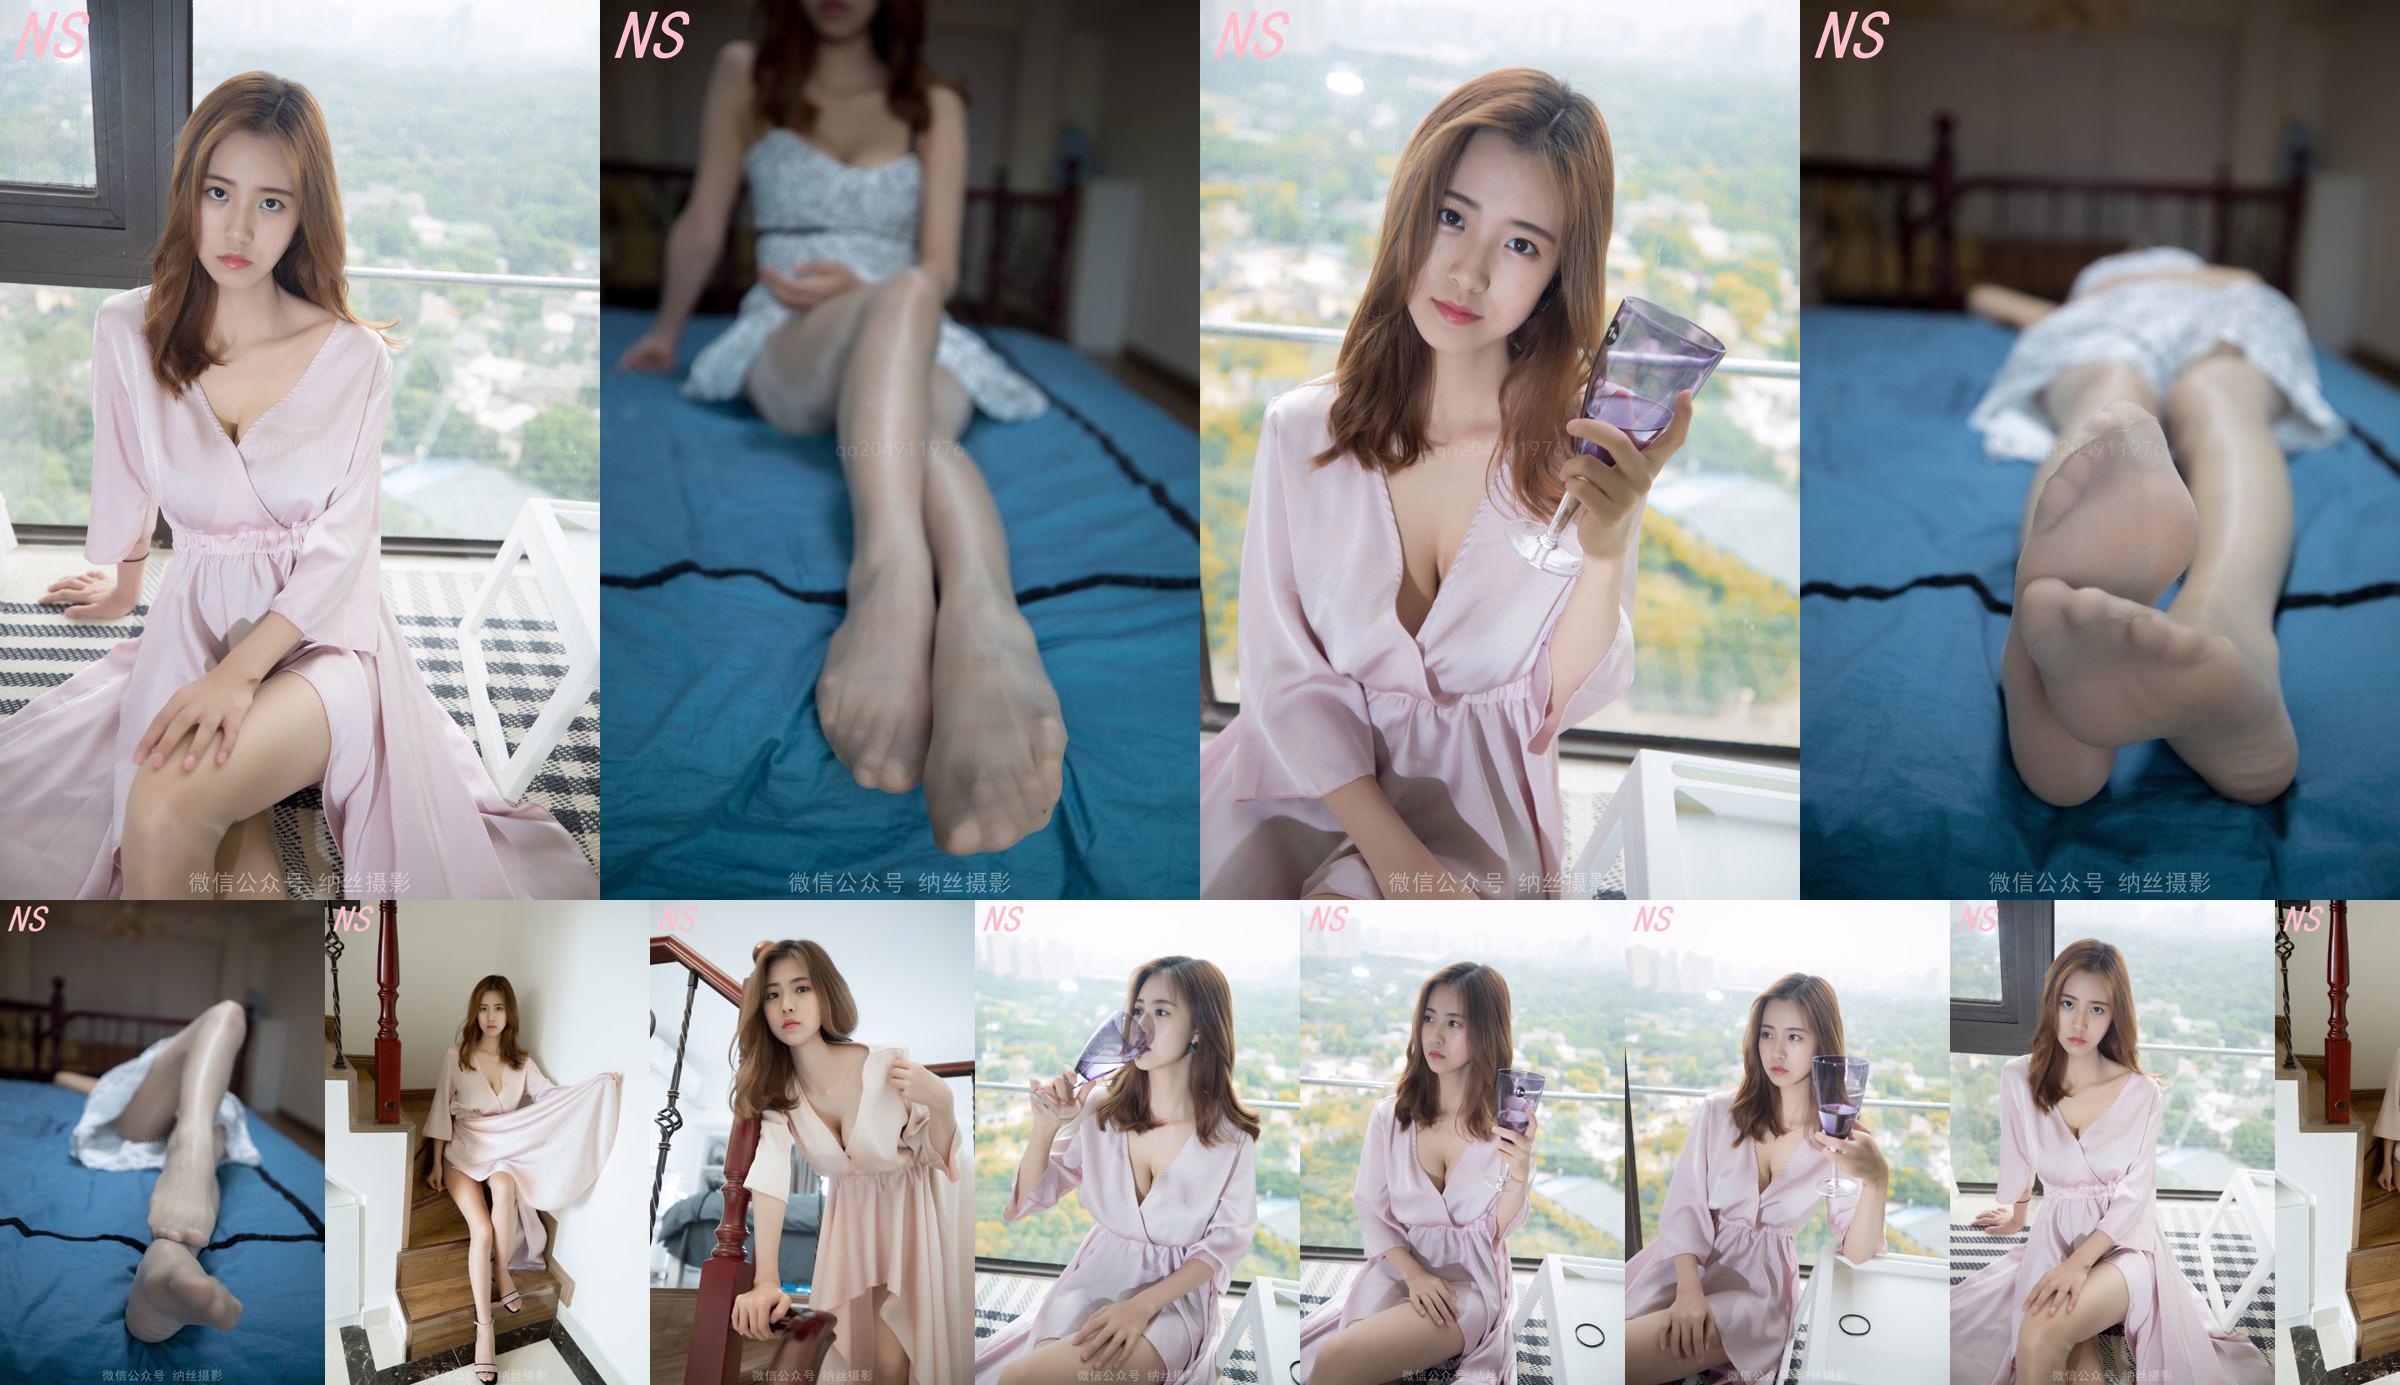 Beauty anchor Hanshuang "The Temptation of Pajamas" [Nasi Photography] No.610c4e Page 5